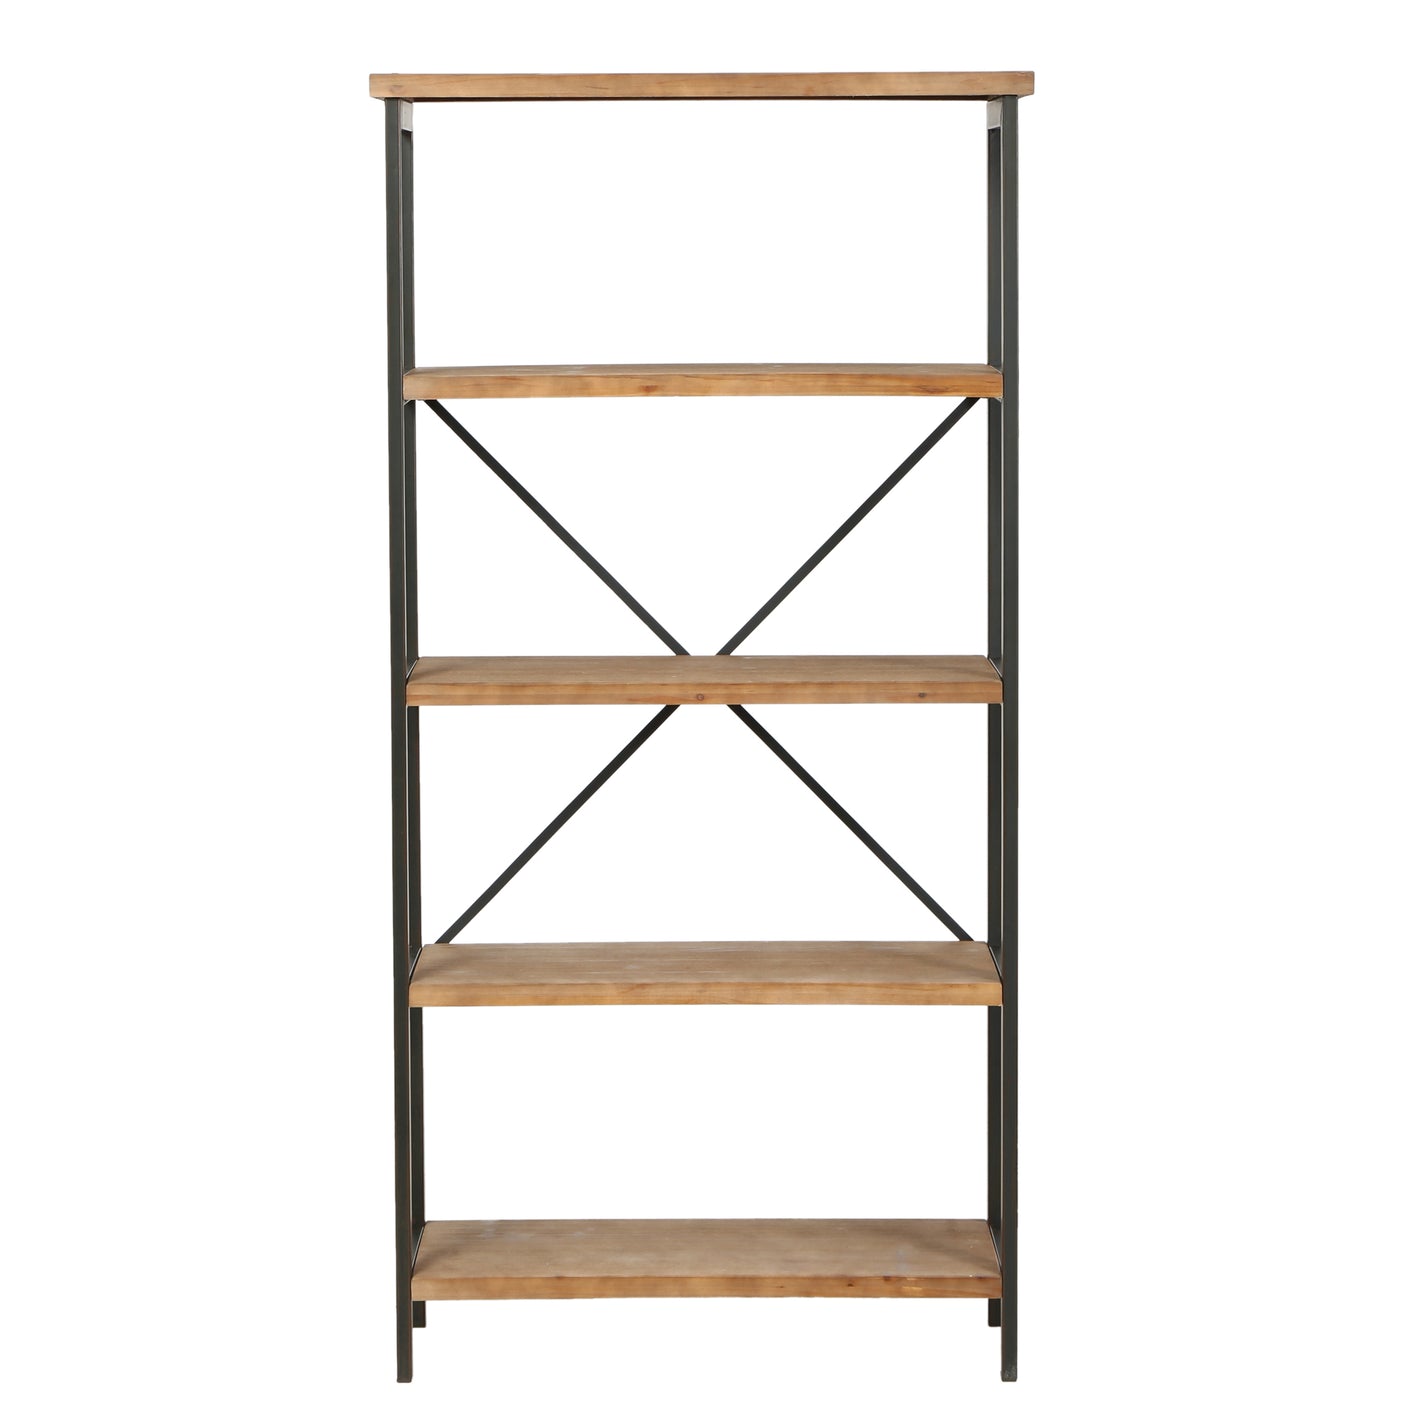 Warner Rustic 4 Shelf Wood & Metal Etagere Bookcase – GDFStudio